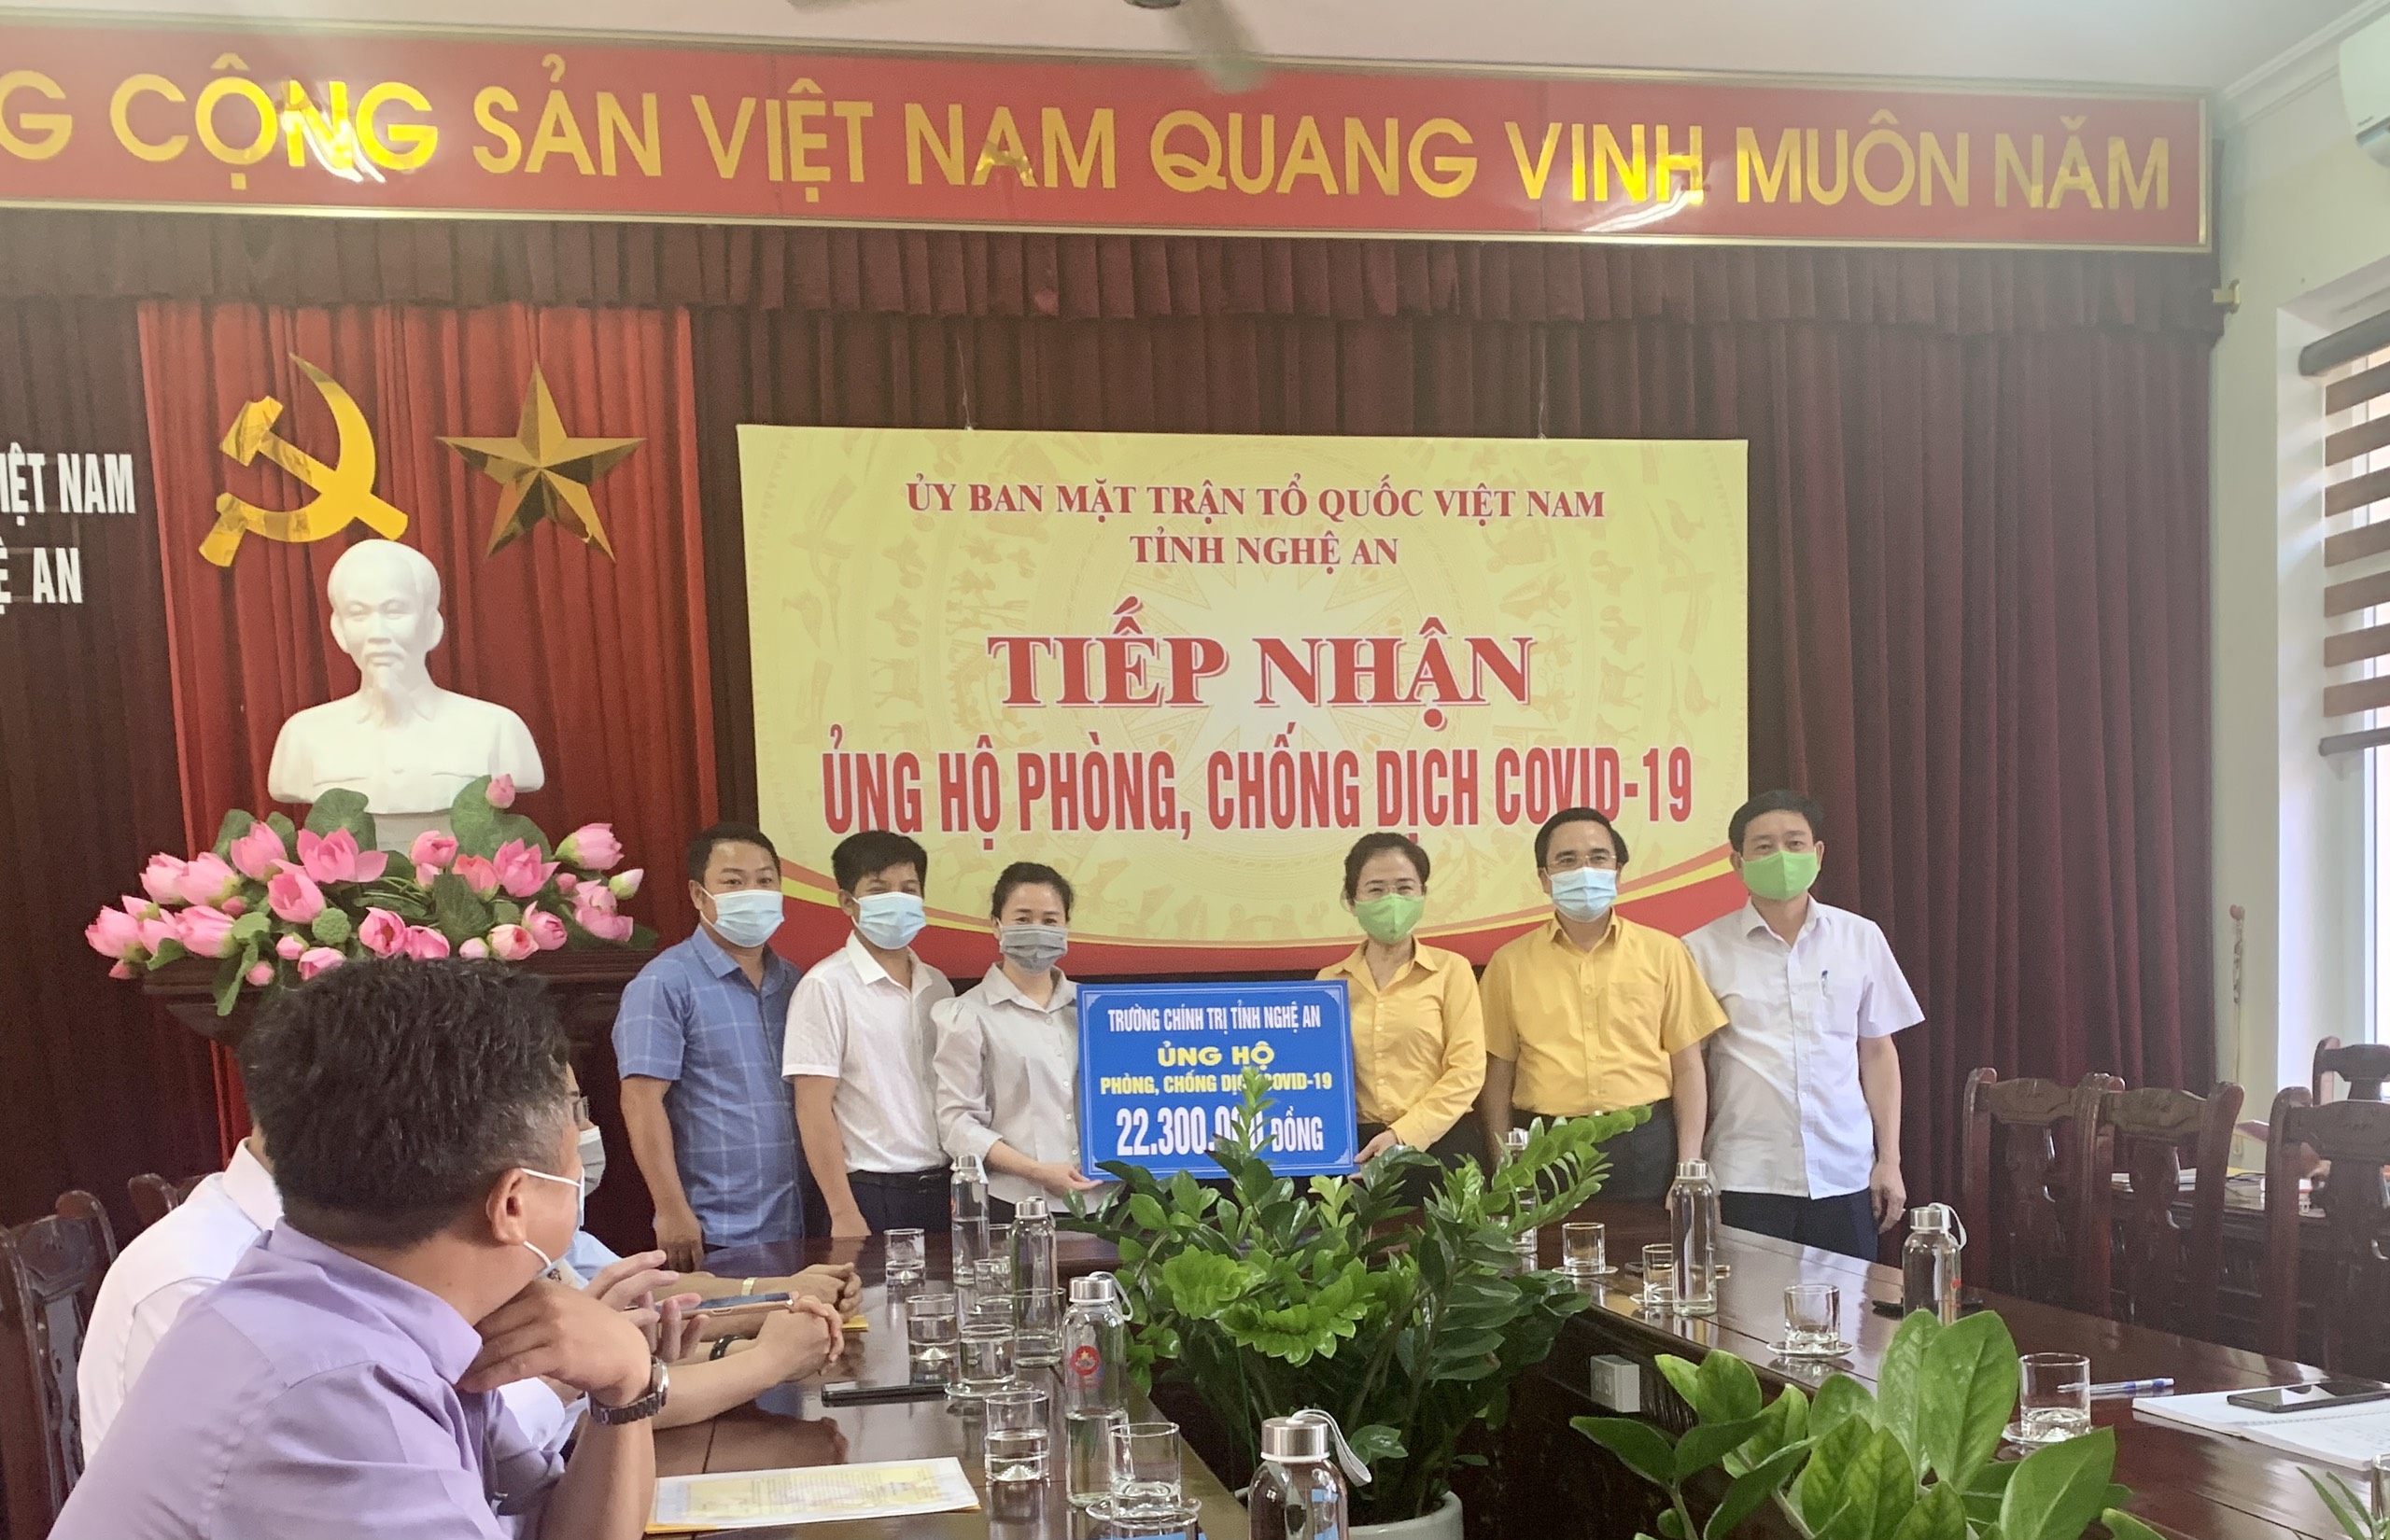 Trường Chính trị tỉnh Nghệ An: Ủng hộ 22.300.000 đồng phòng, chống dịch COVID-19